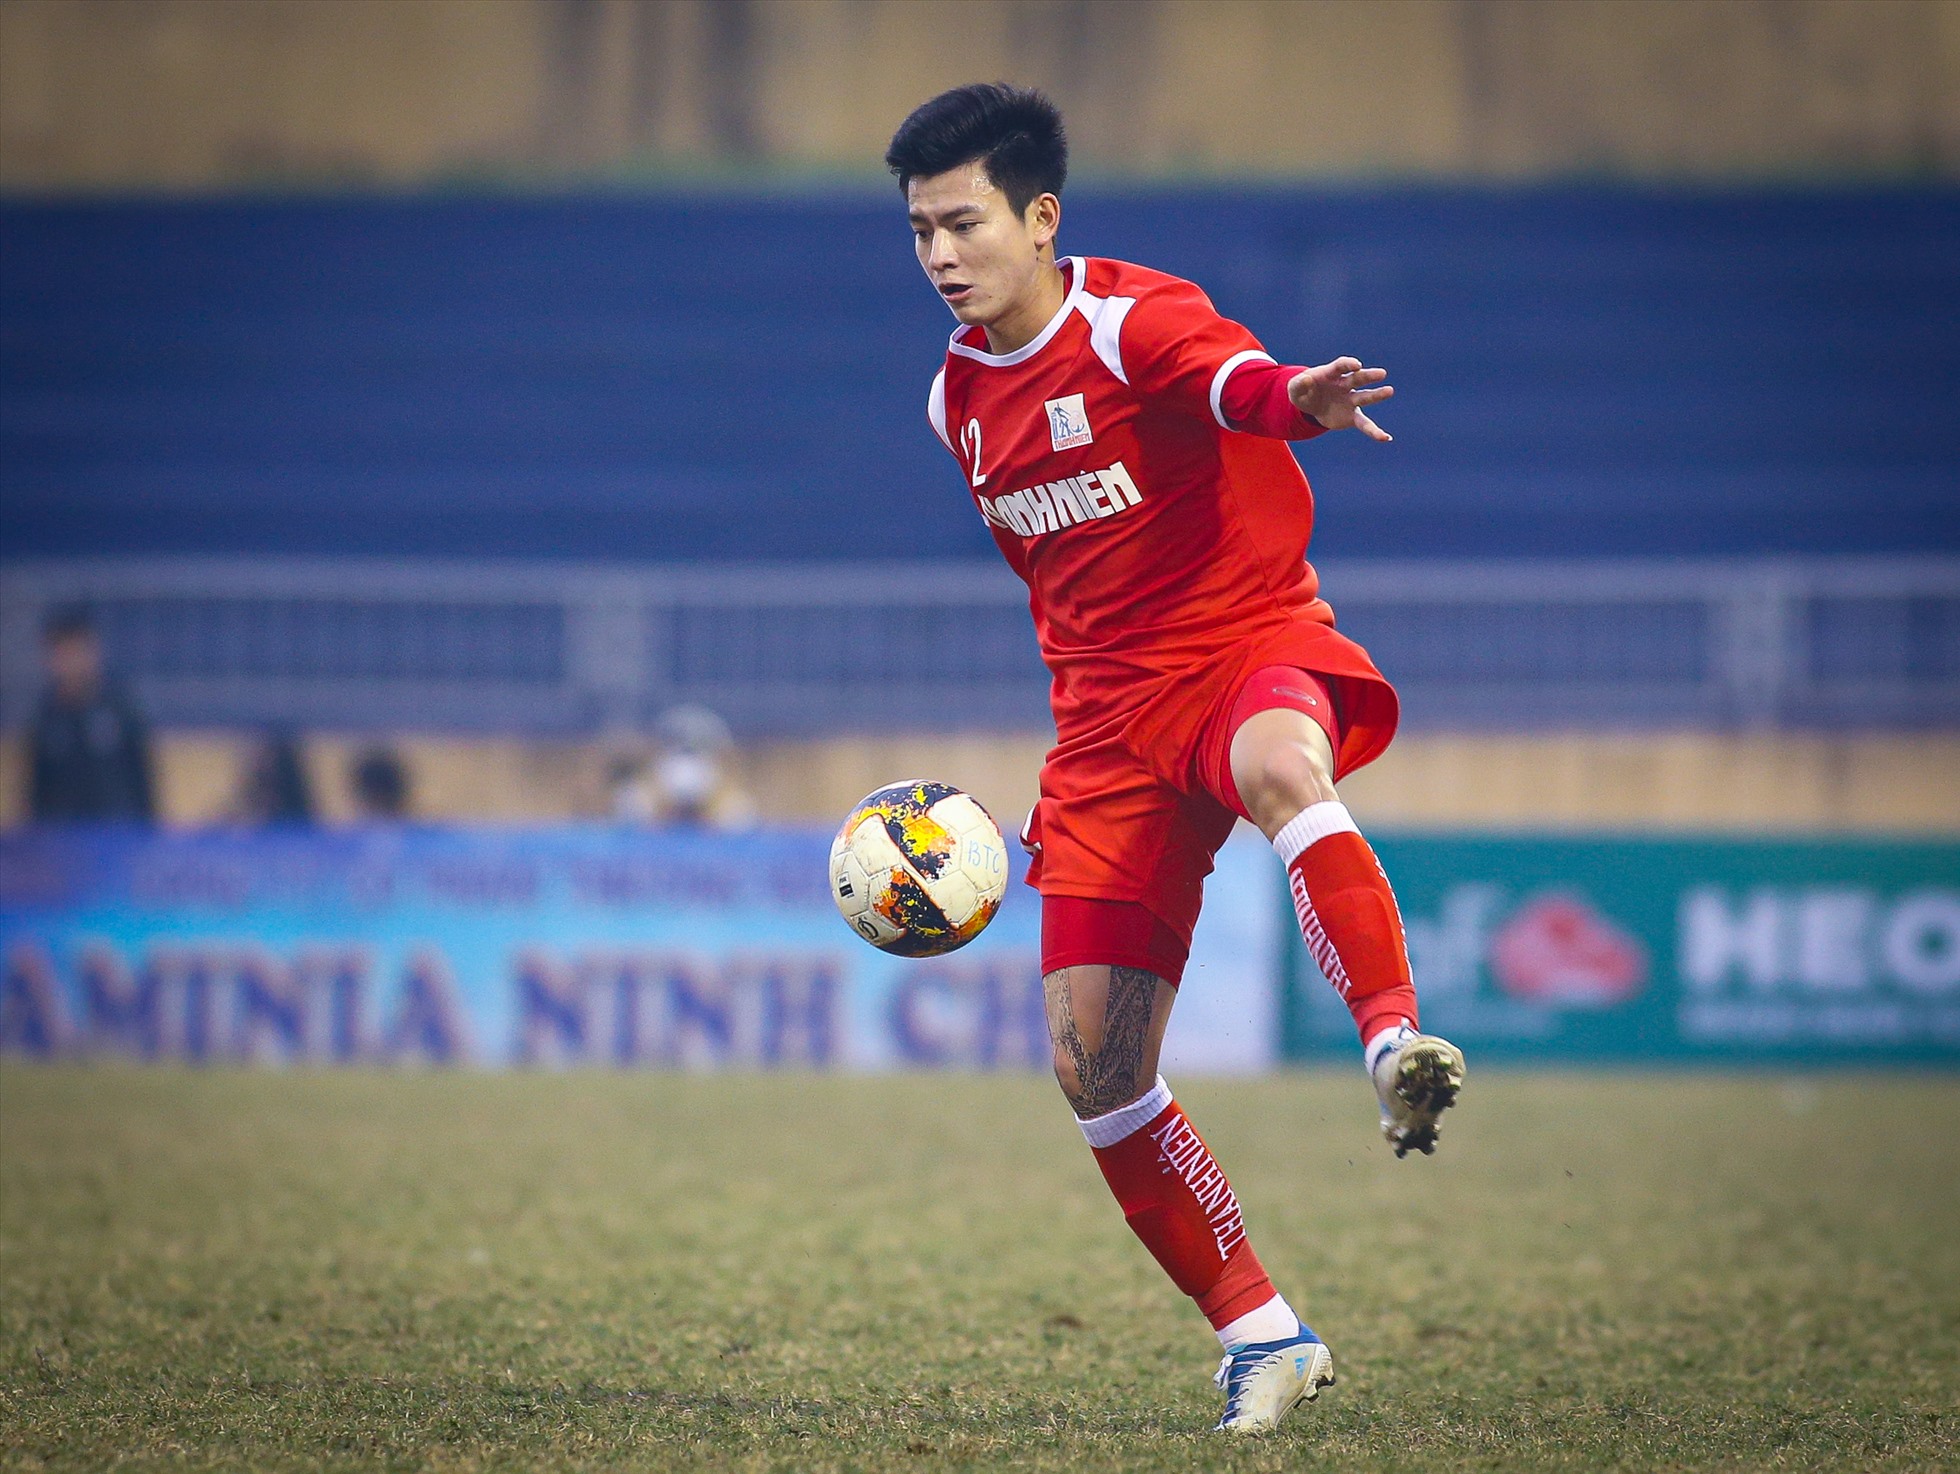 Phan Tuấn Tài liên tục dâng cao hỗ trợ các đồng đội trên hàng công. Những đường tạt bóng của hậu vệ phải sinh năm 2001 là “vũ khí” lợi hại trên mặt trận tấn công của U21 Viettel.